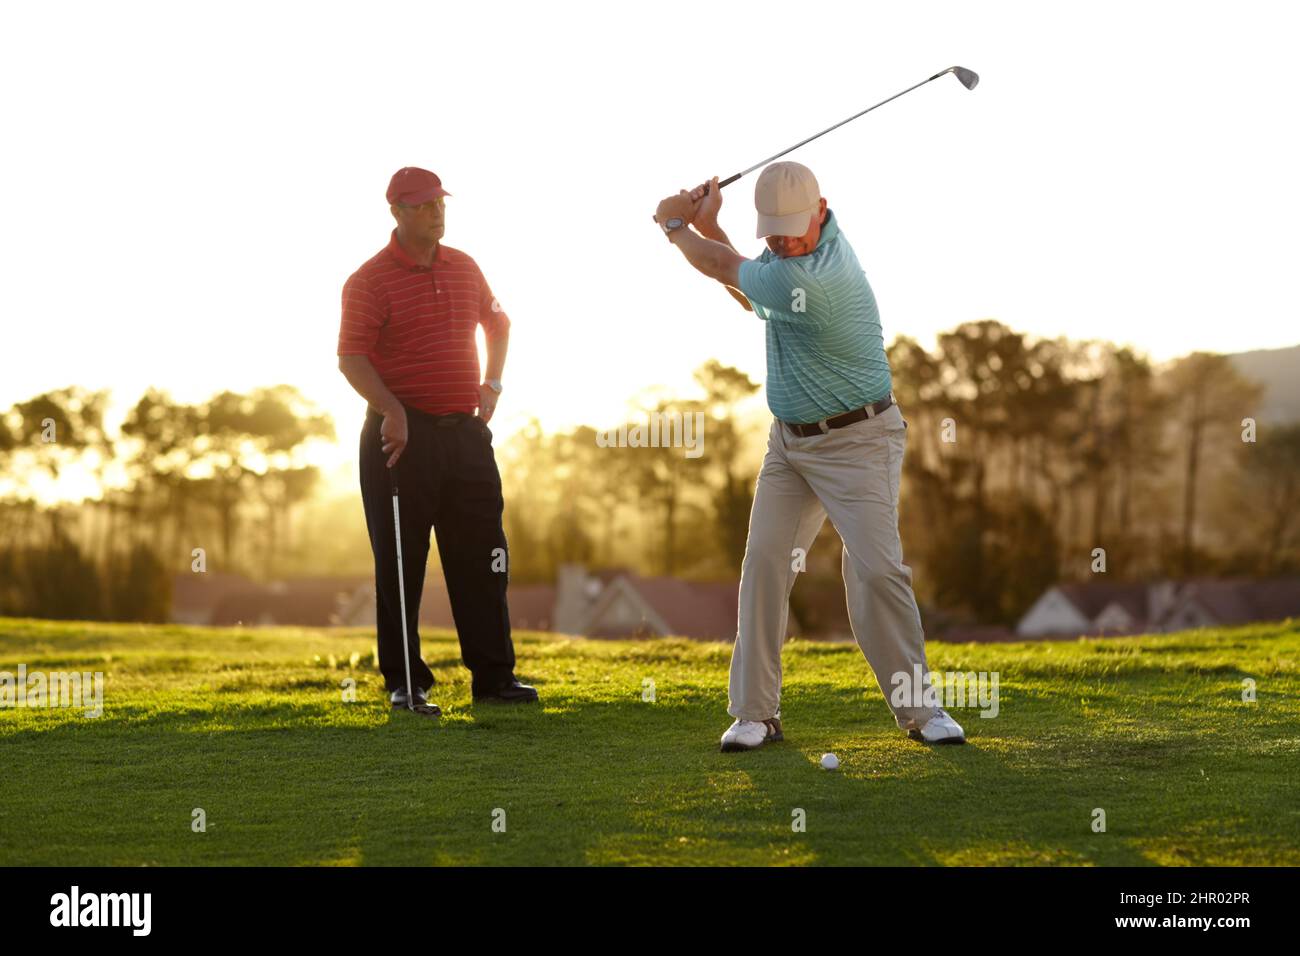 Viser le vert. Deux golfeurs de sexe masculin passent par une partie de golf. Banque D'Images